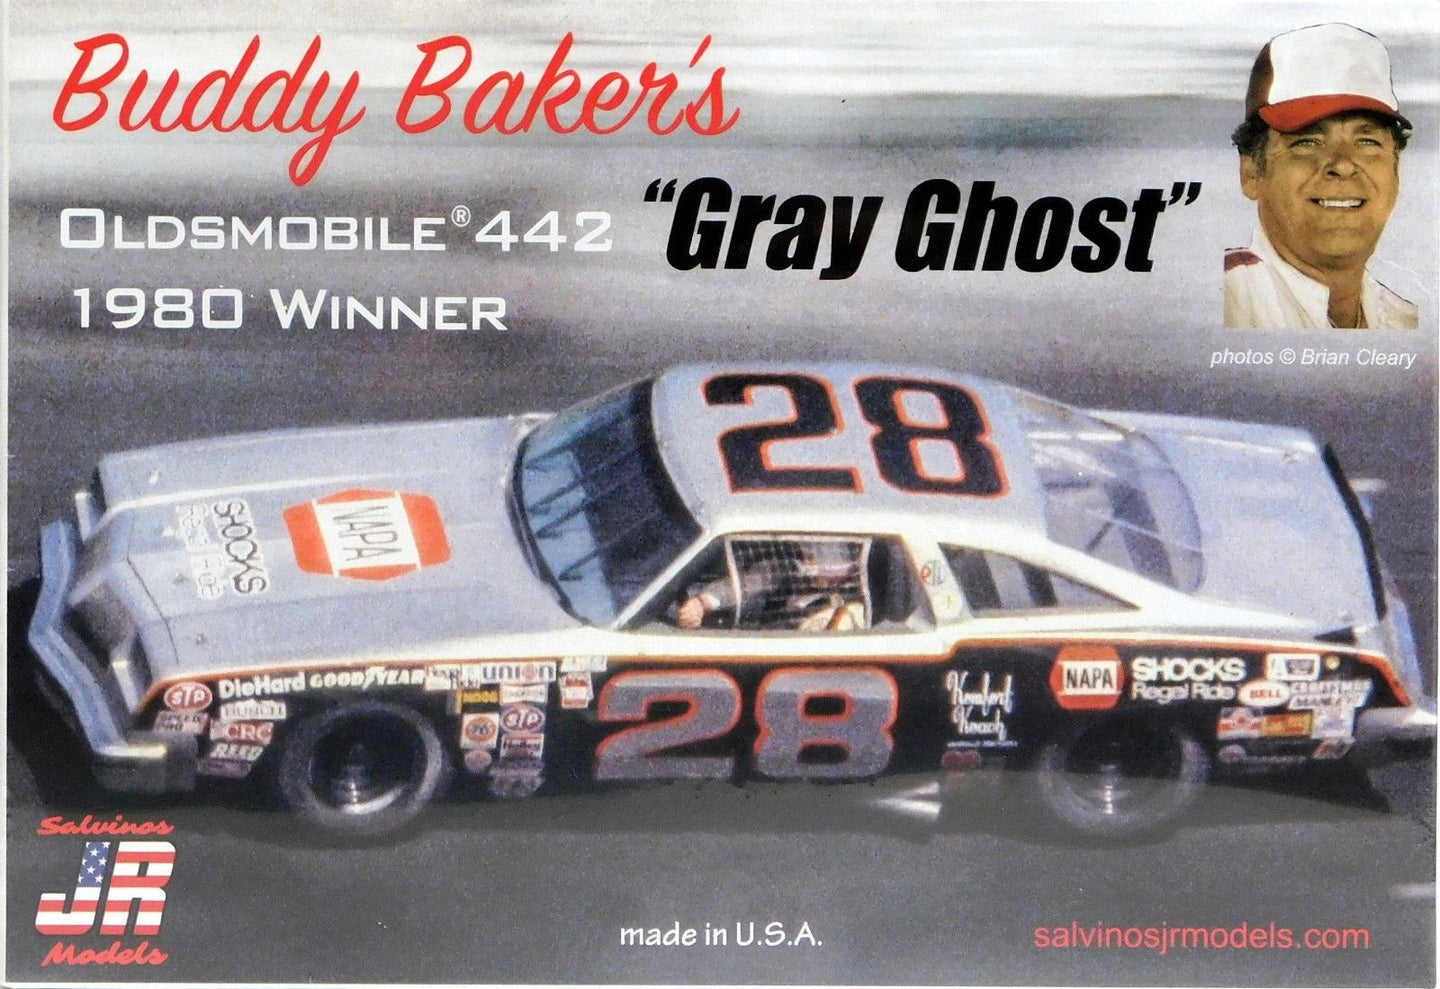 Salvinos 1/25 Buddy Baker's Gray Ghost Oldsmobile 442 1980 Winner BB01980D